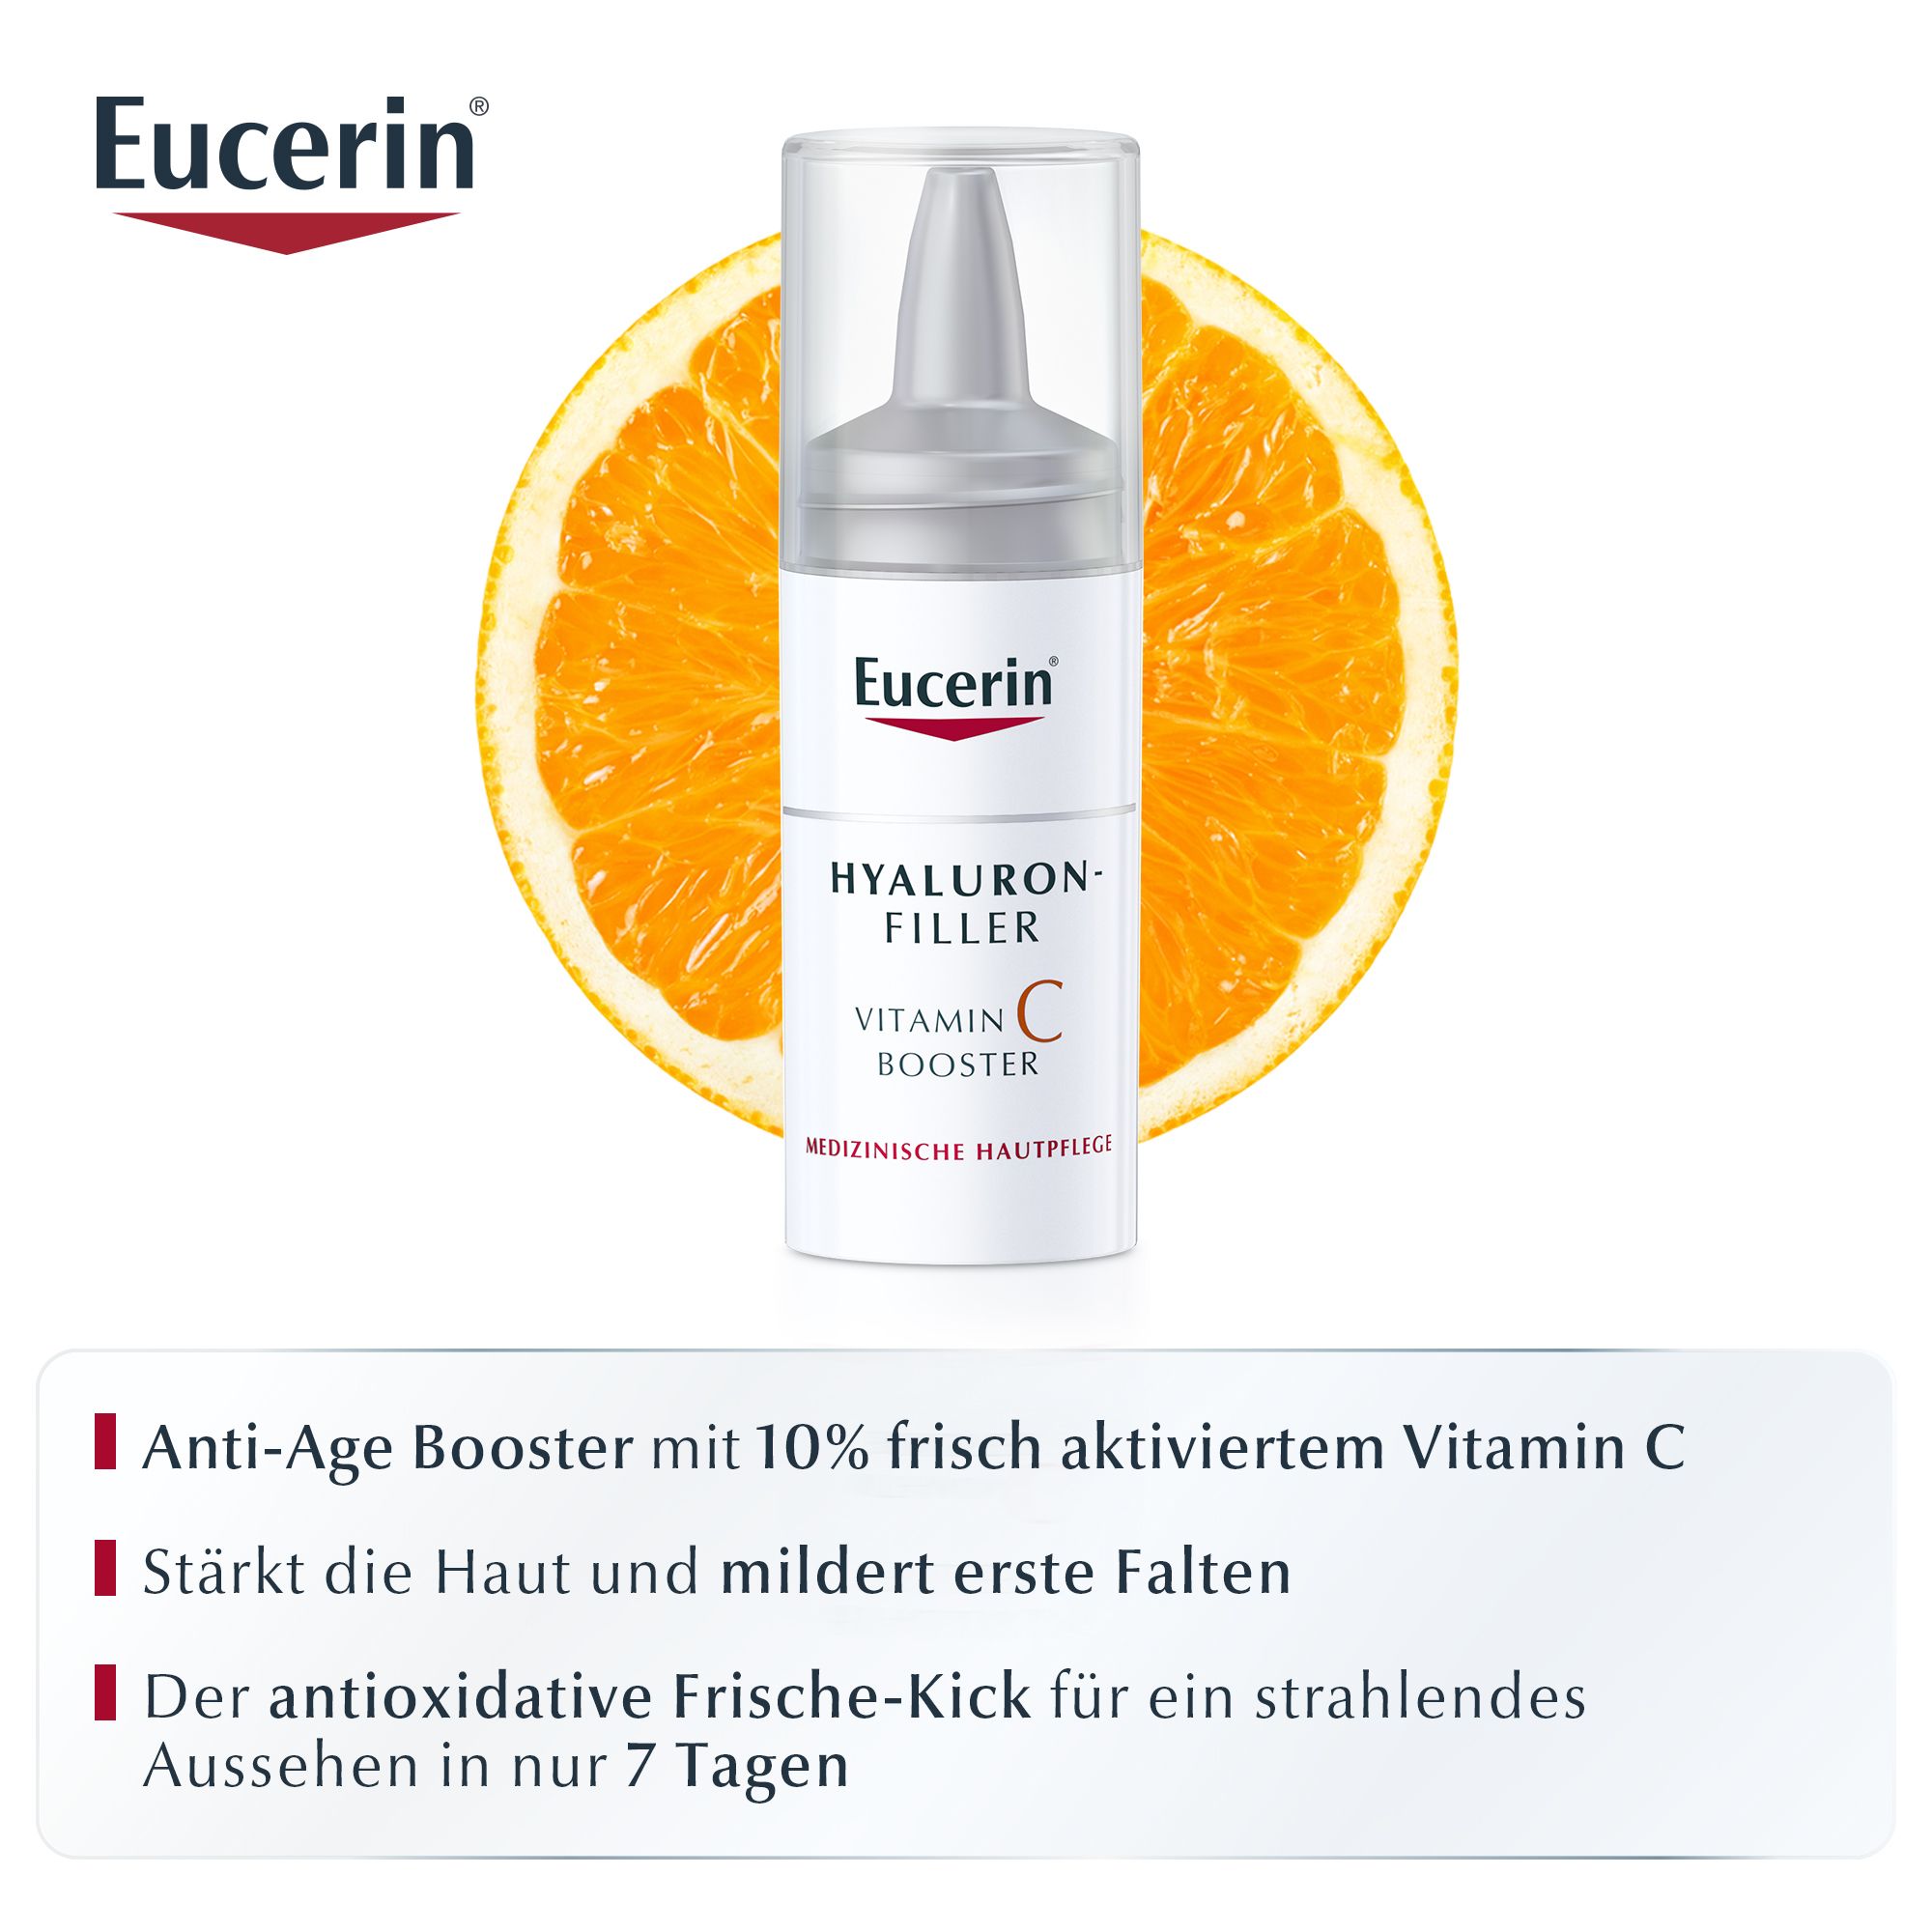 Eucerin® Hyaluron-Filler Vitamin C Booster Vorteilspack – Anti-Age Serum mit 10% frisch aktiviertem Vitamin C